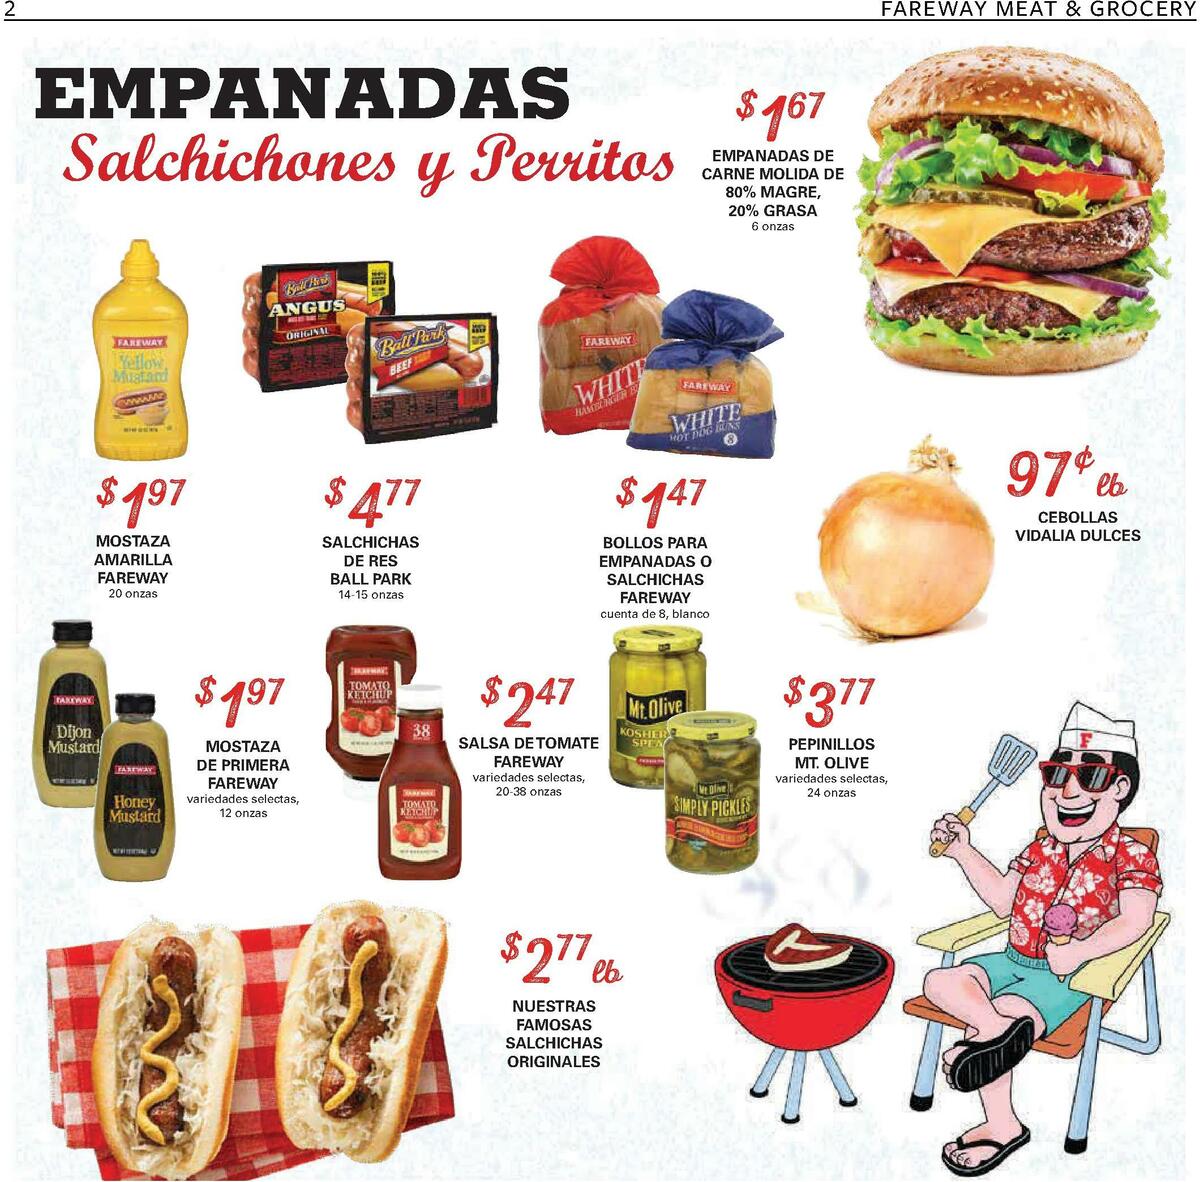 Fareway En Español Weekly Ad from June 5